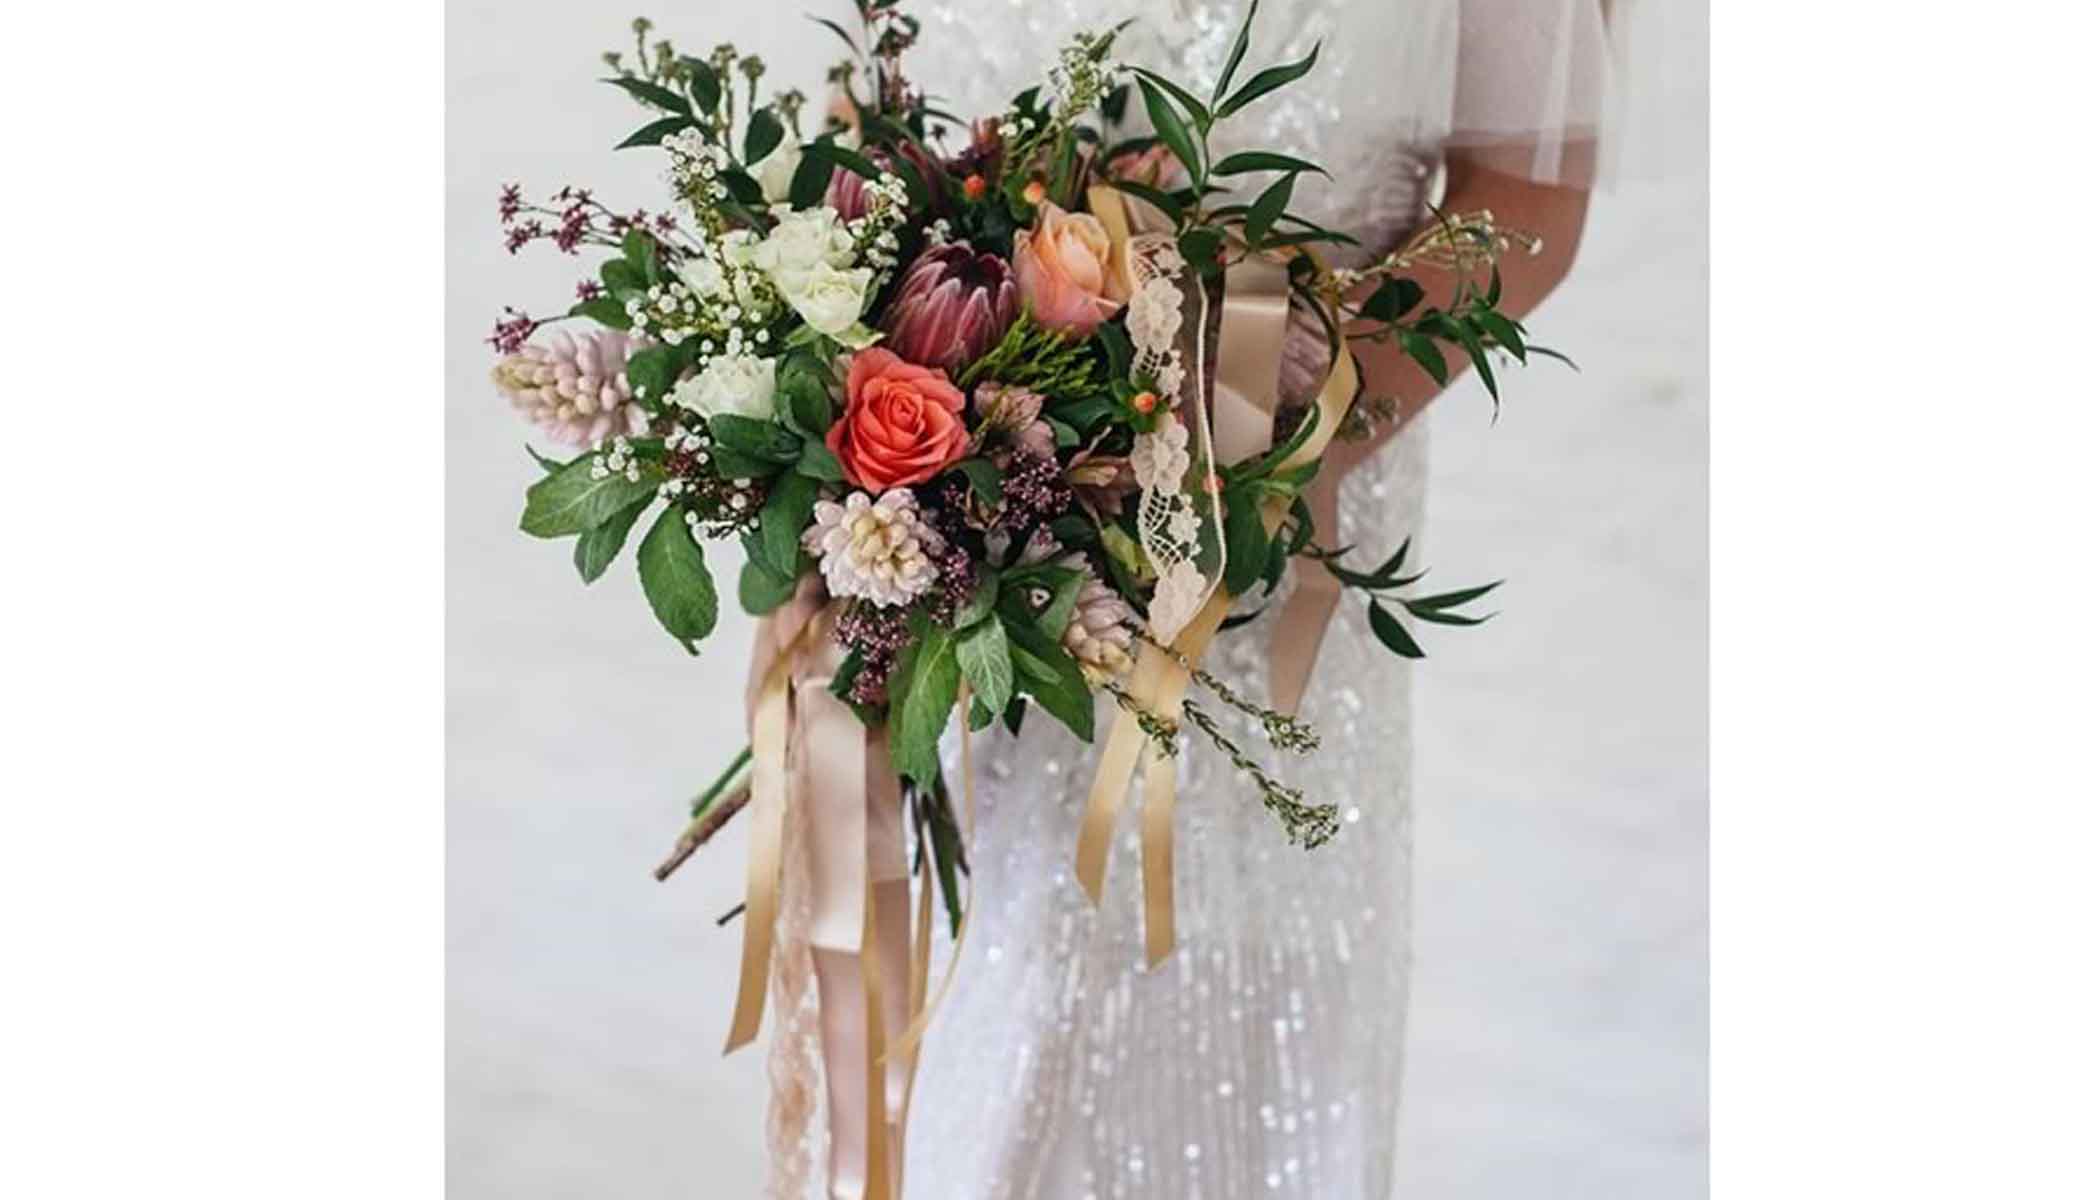 اگر شما یک عروس روستایی هستید، دسته گل هایی را دوست خواهید داشت